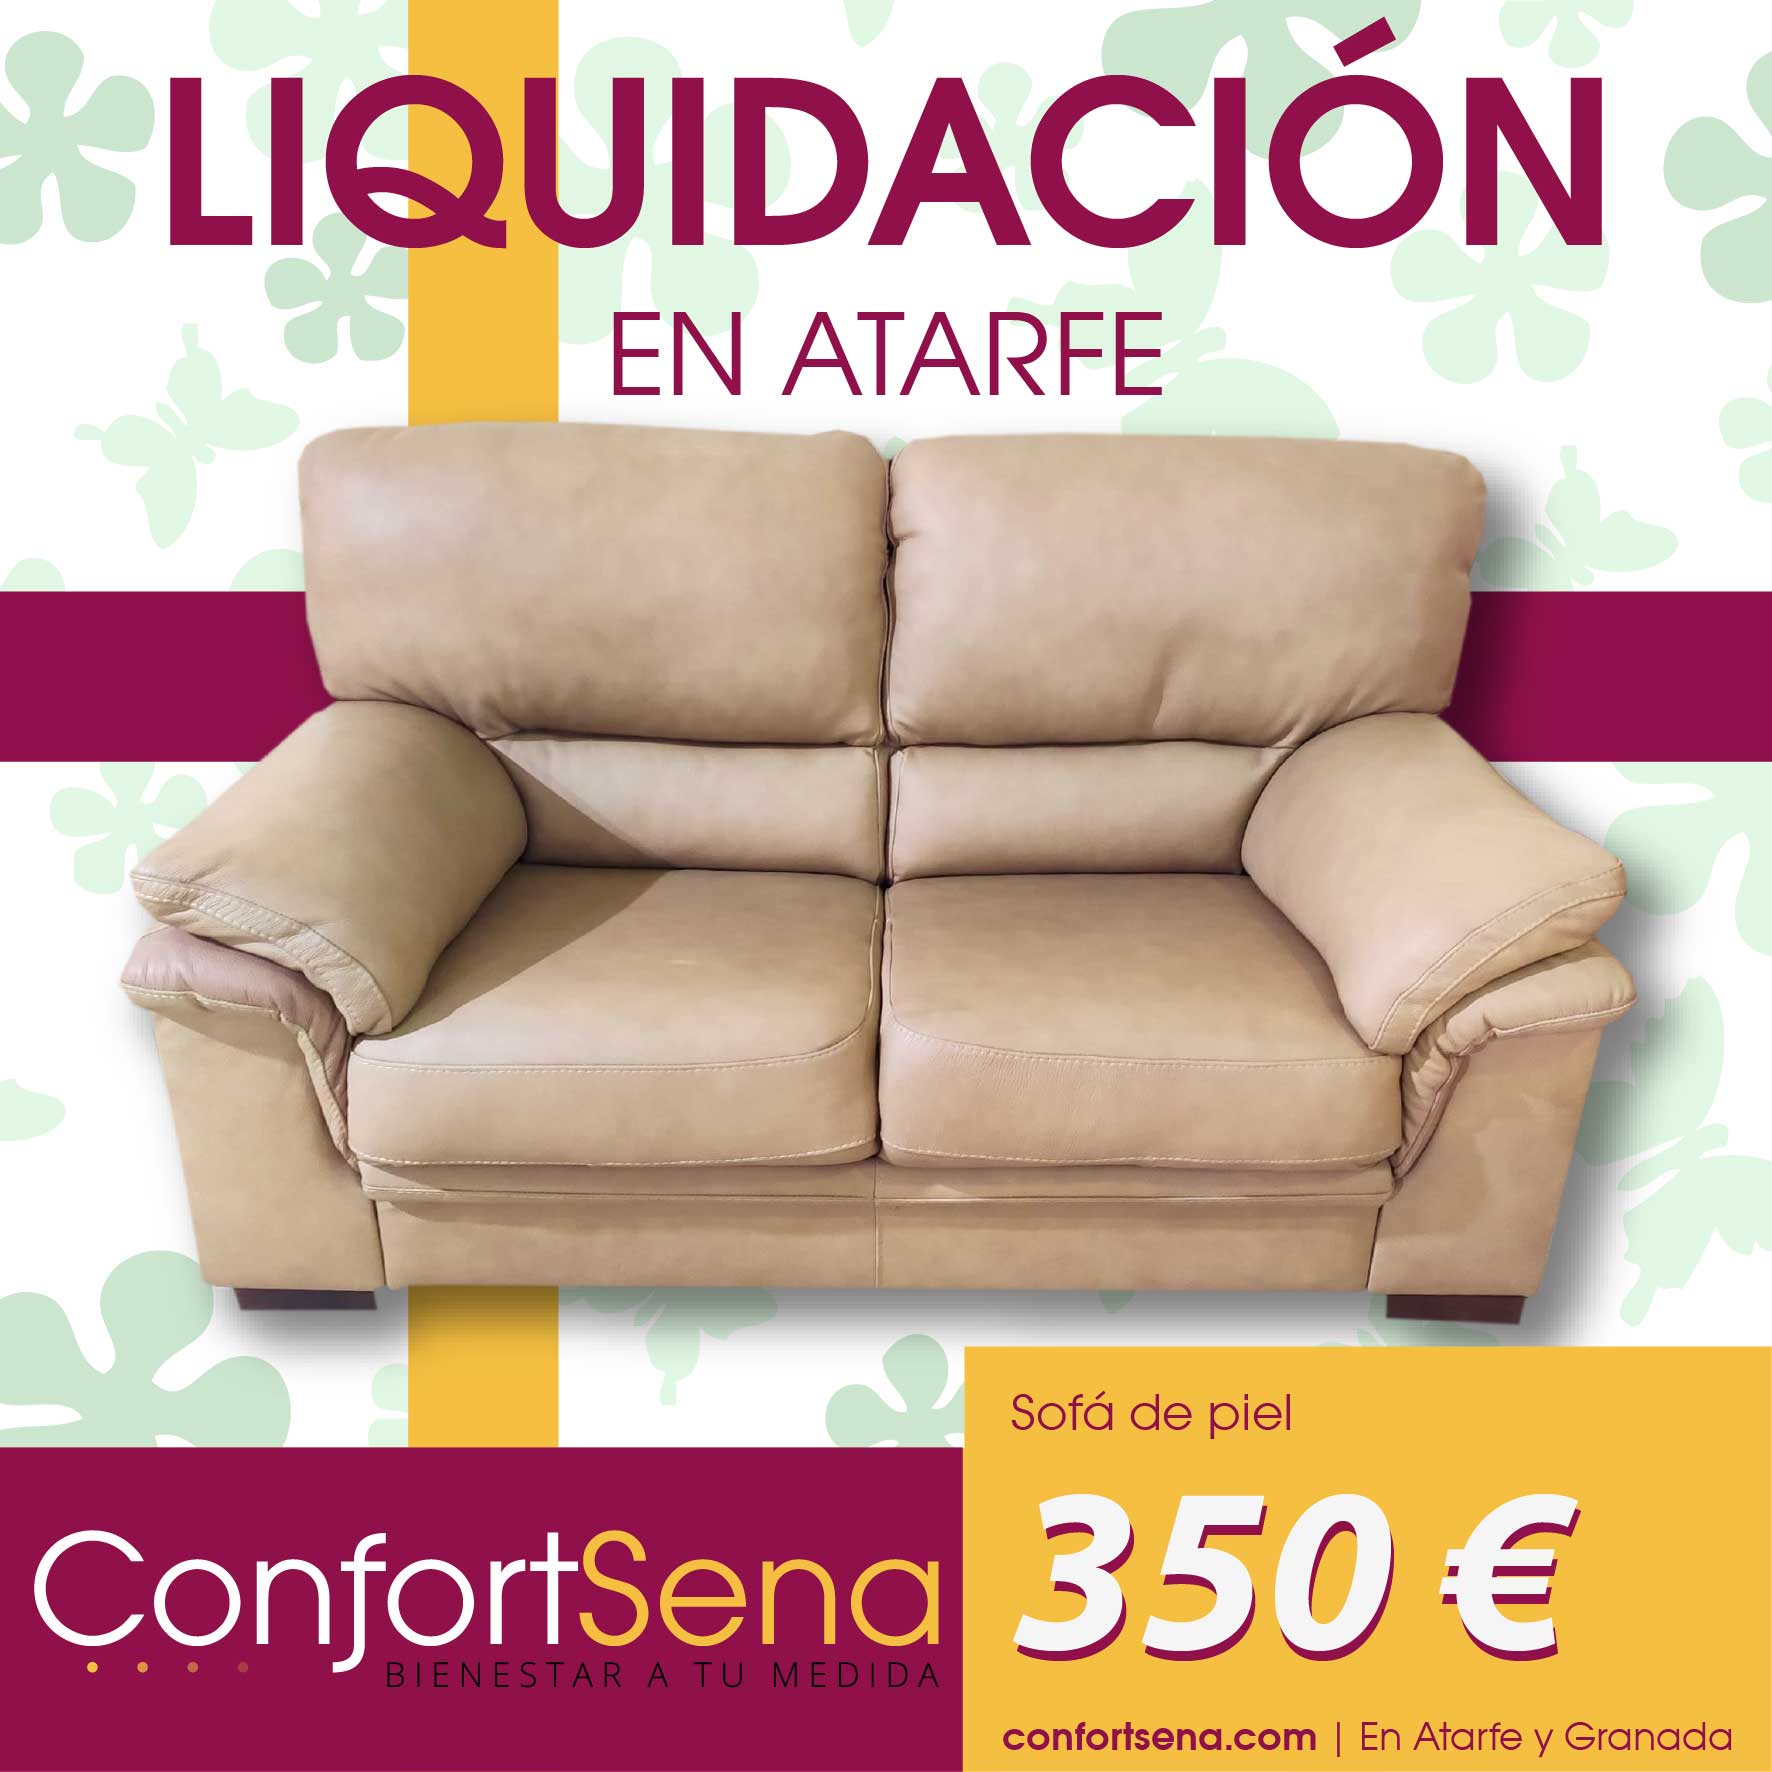 confortsena-ofertas-sofas-de-liquidación-en-atarfe-3